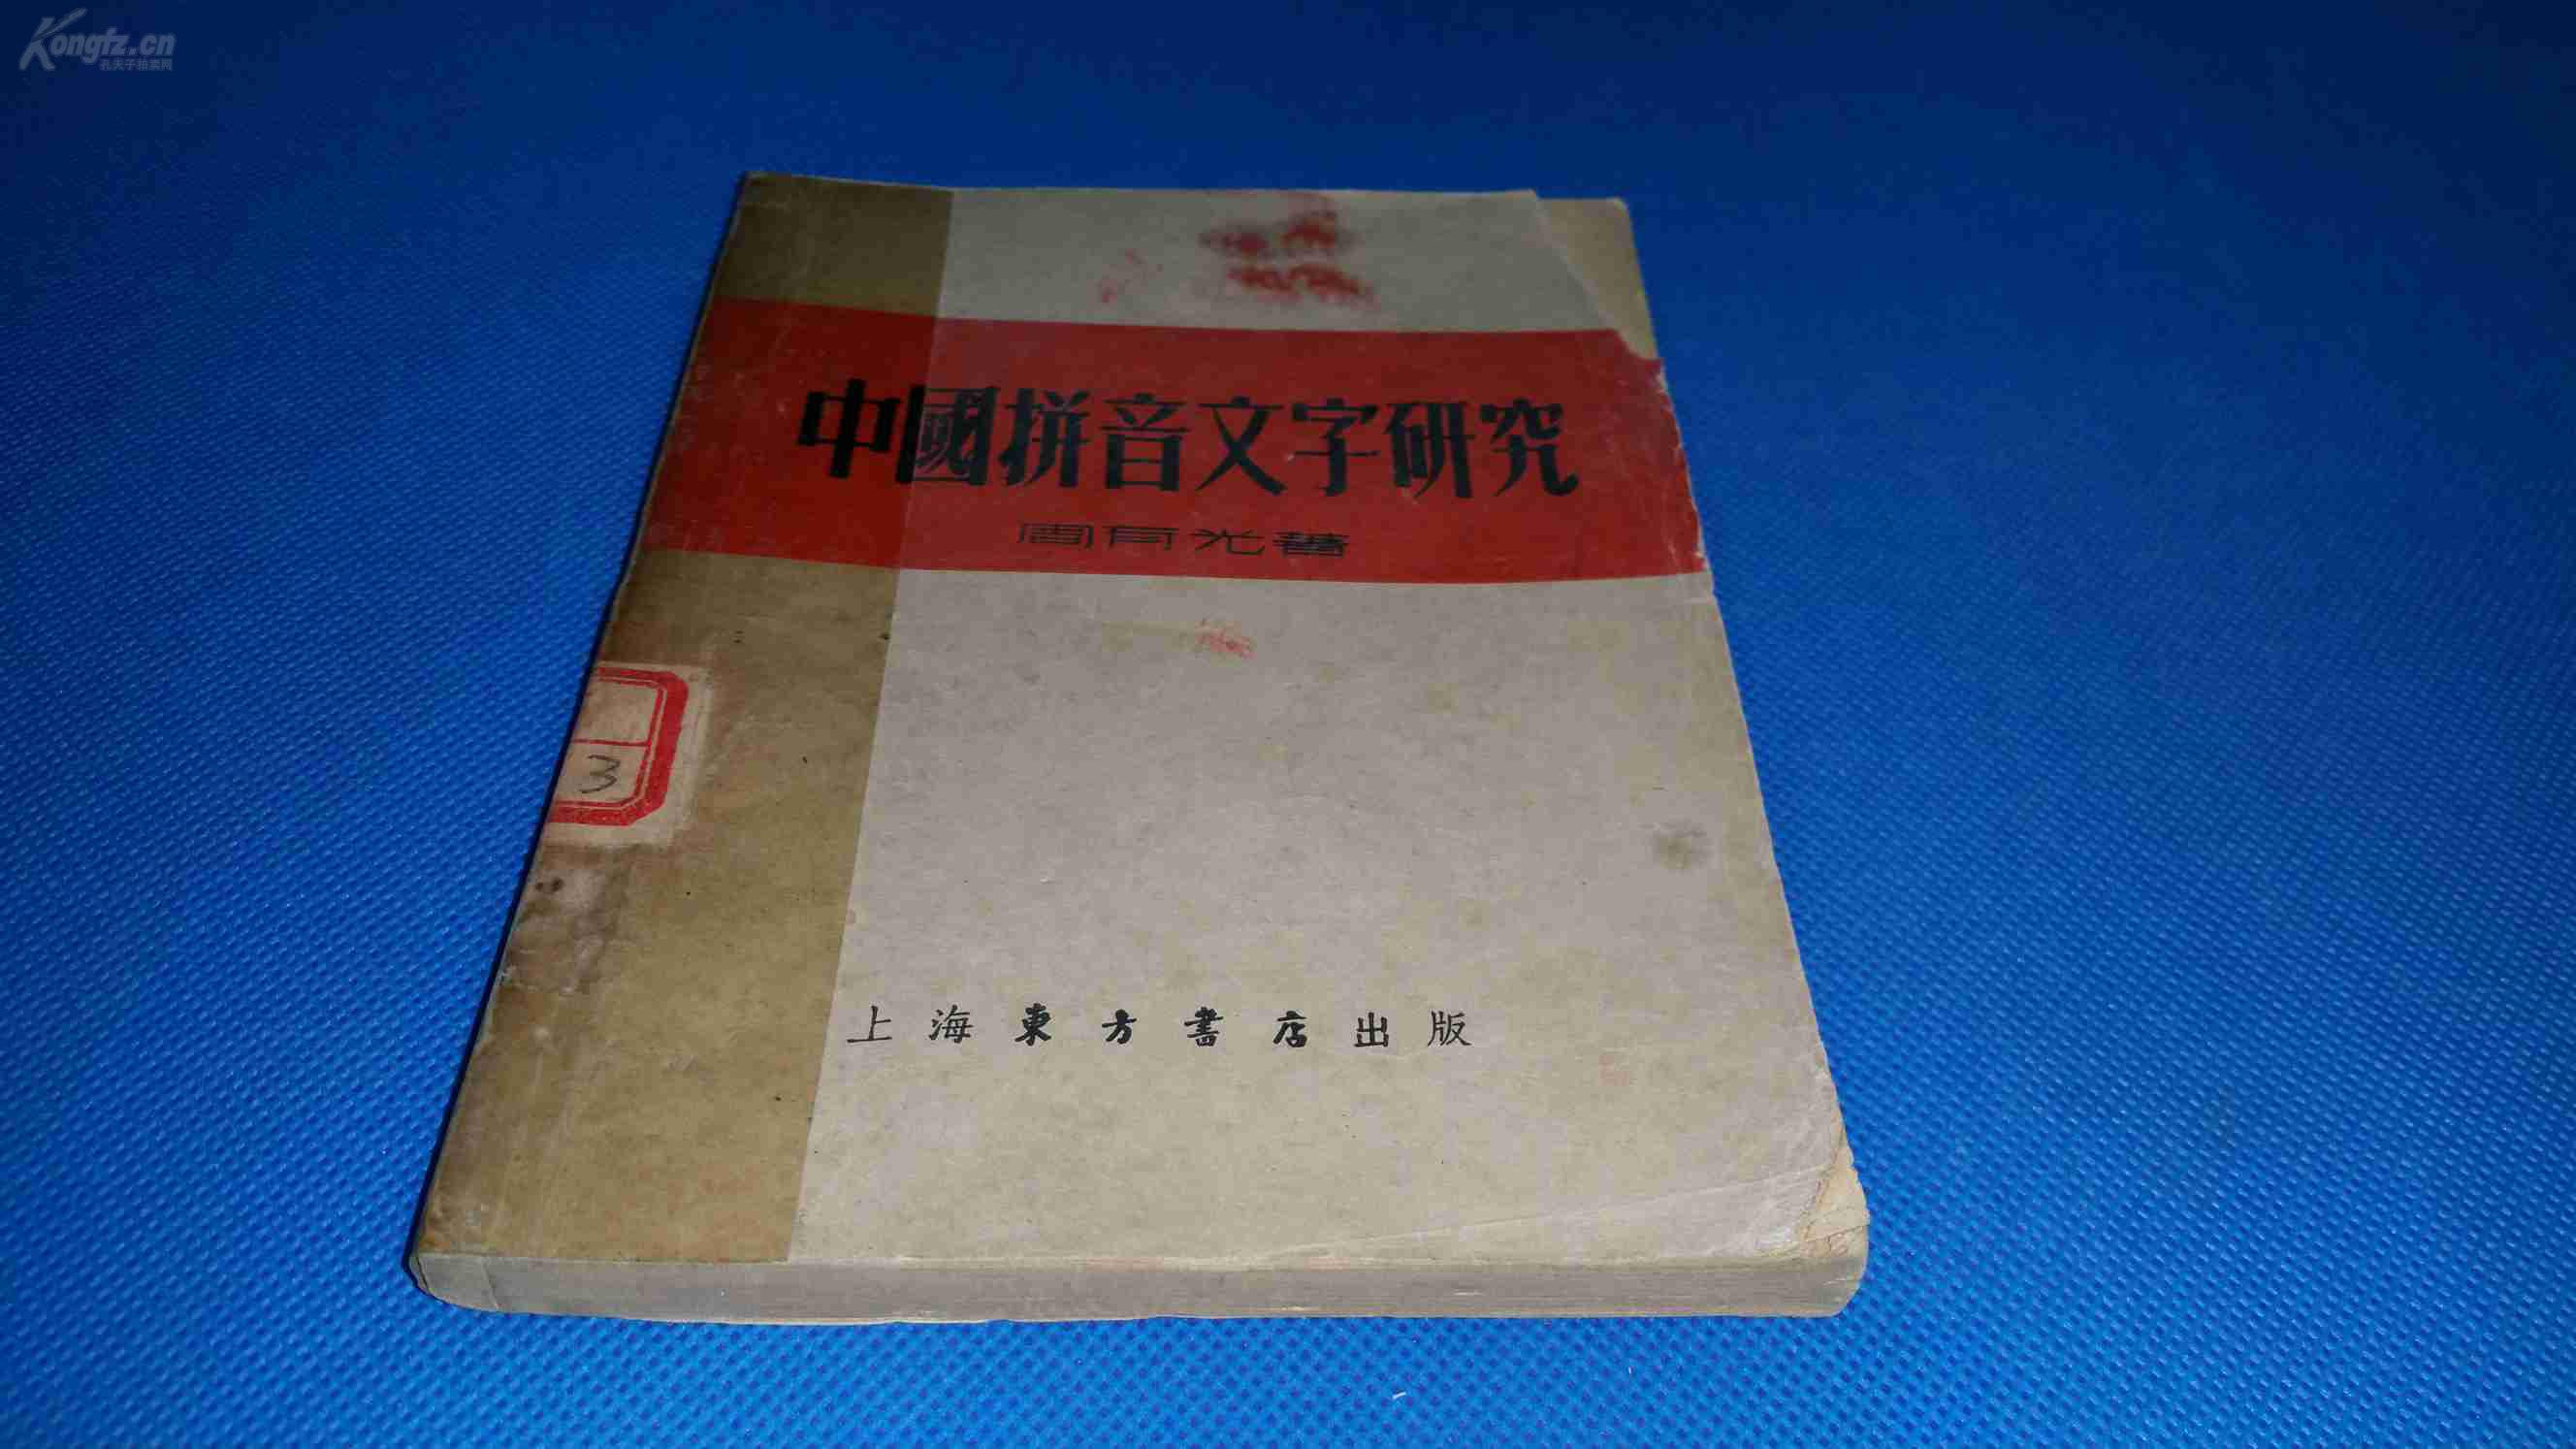 1952年 周有光 著 《中国拼音文字研究》一册全